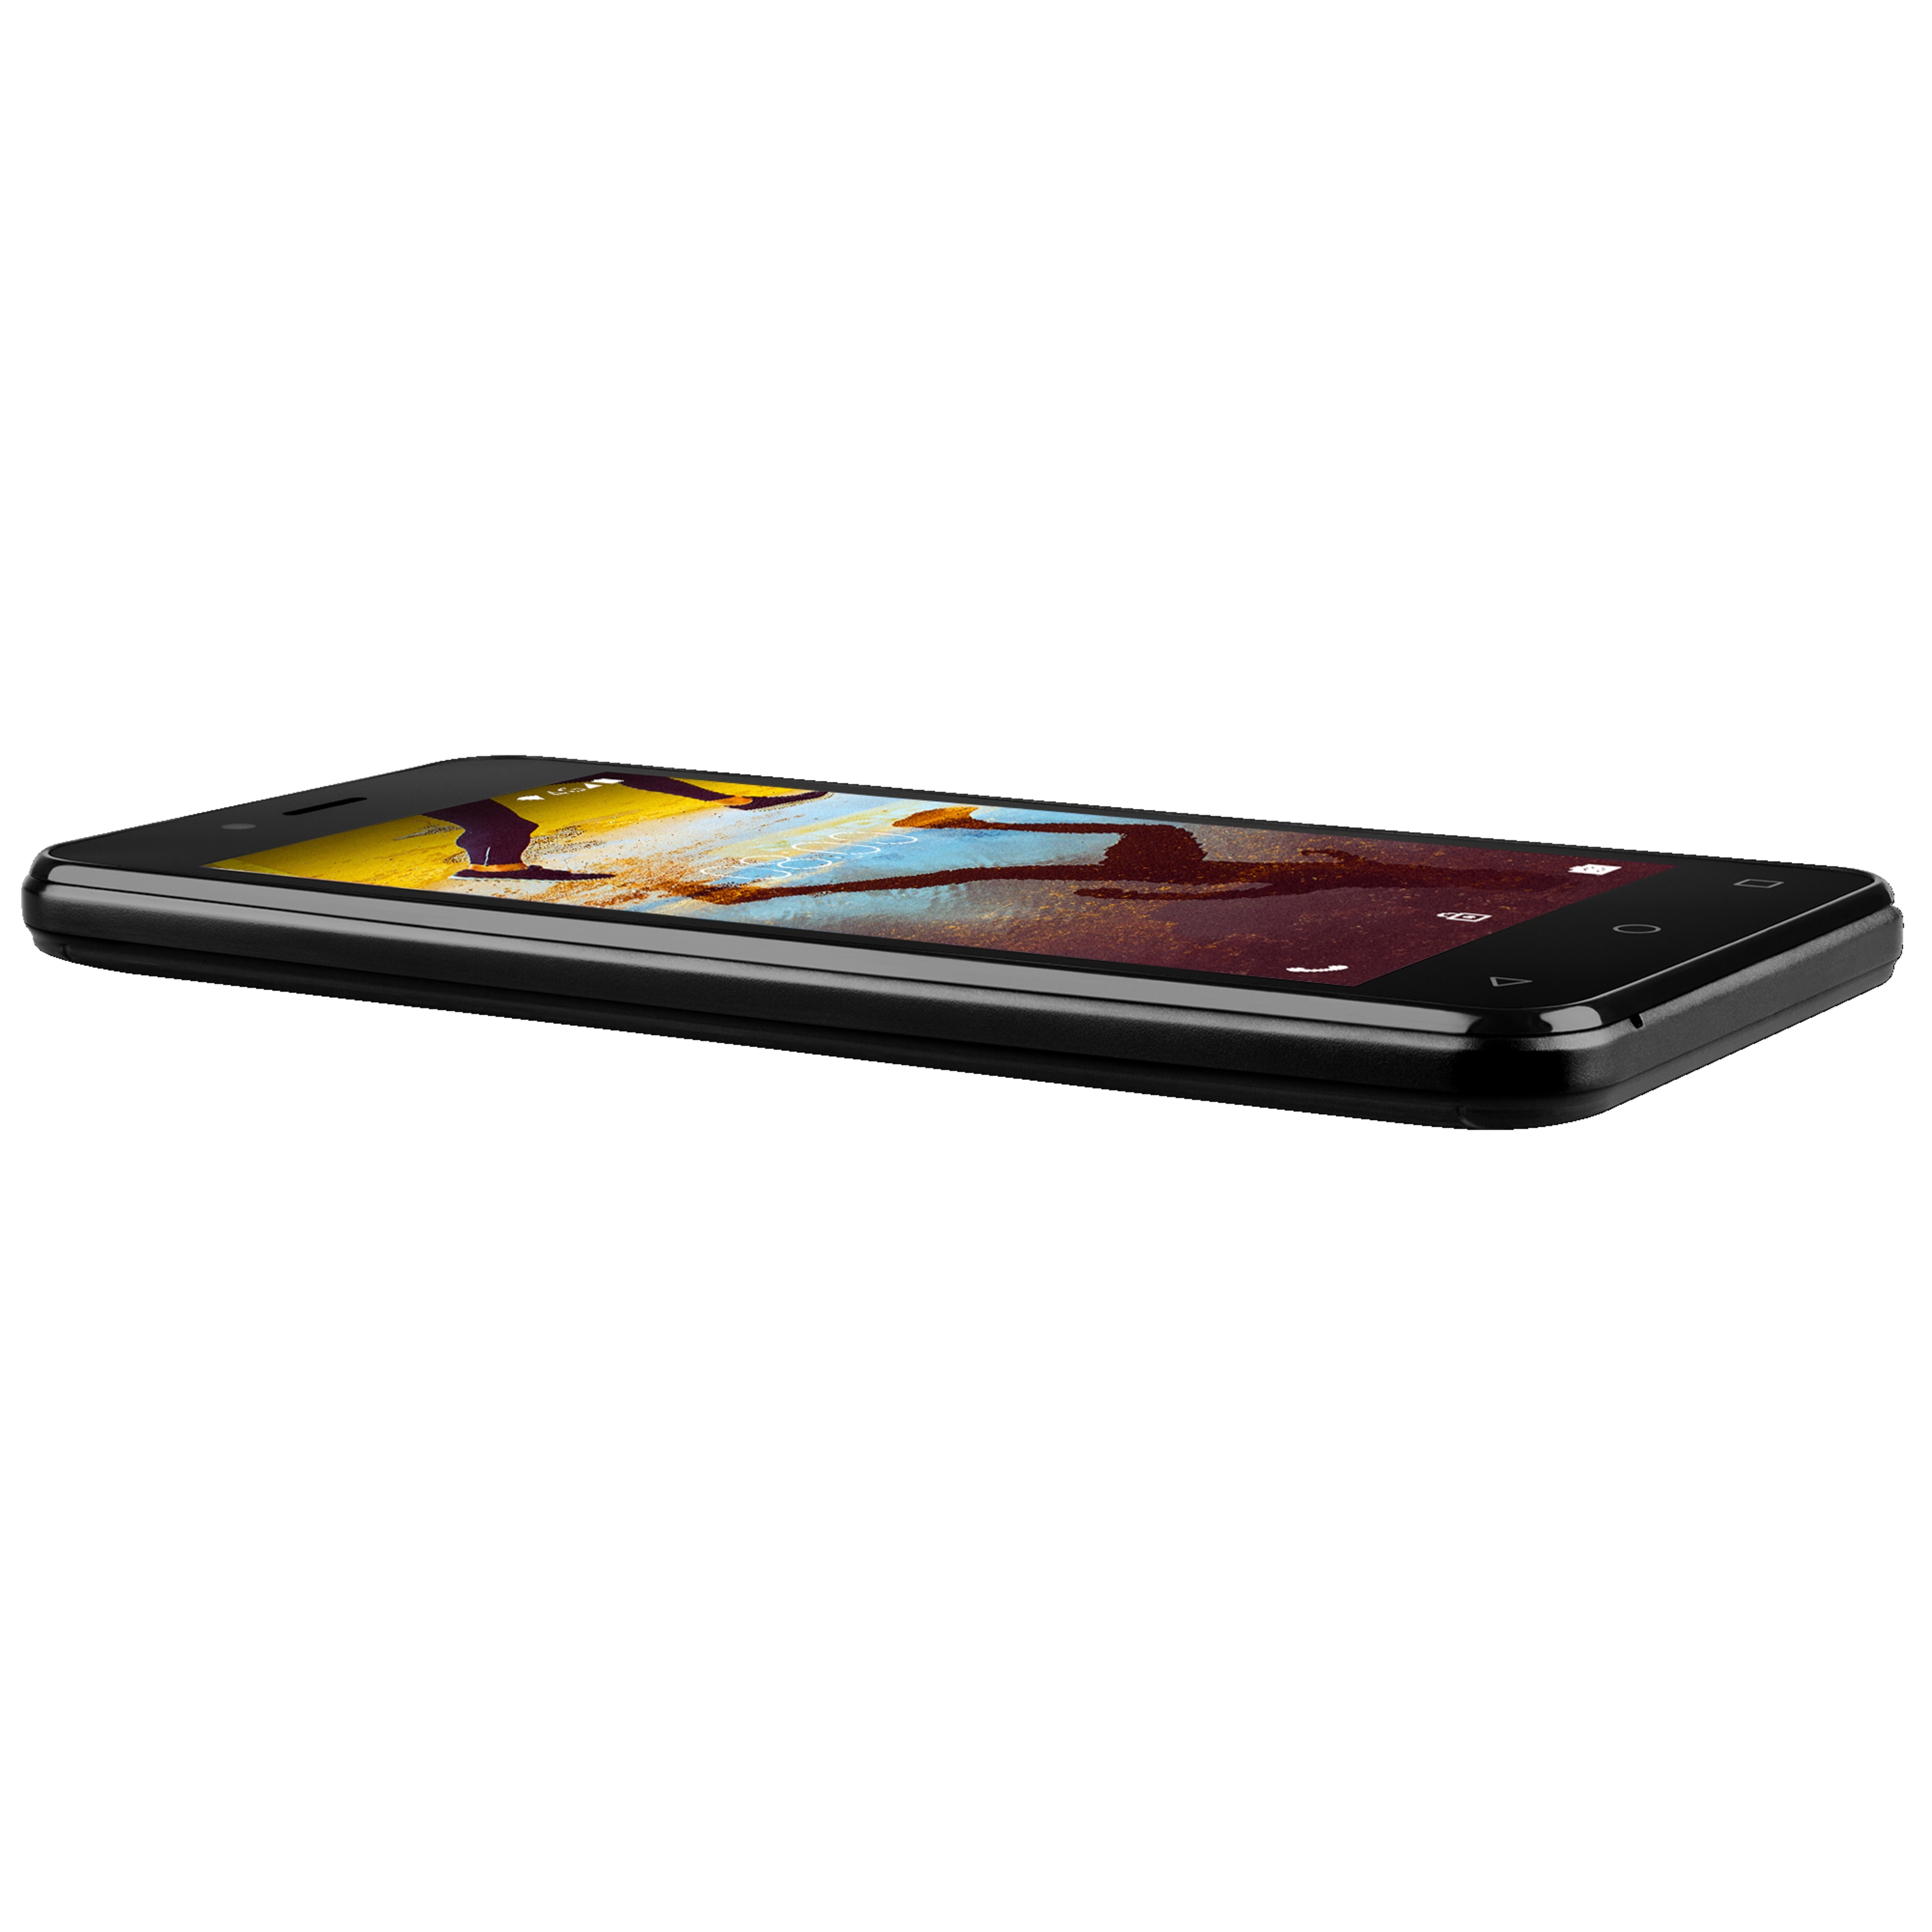 MEDION® LIFE® E4507, 11,43 cm (4,5") Display, Android™ 7.0 Nougat, 16 GB Speicher, Quad-Core Prozessor, LTE, Dual-SIM  (B-Ware)